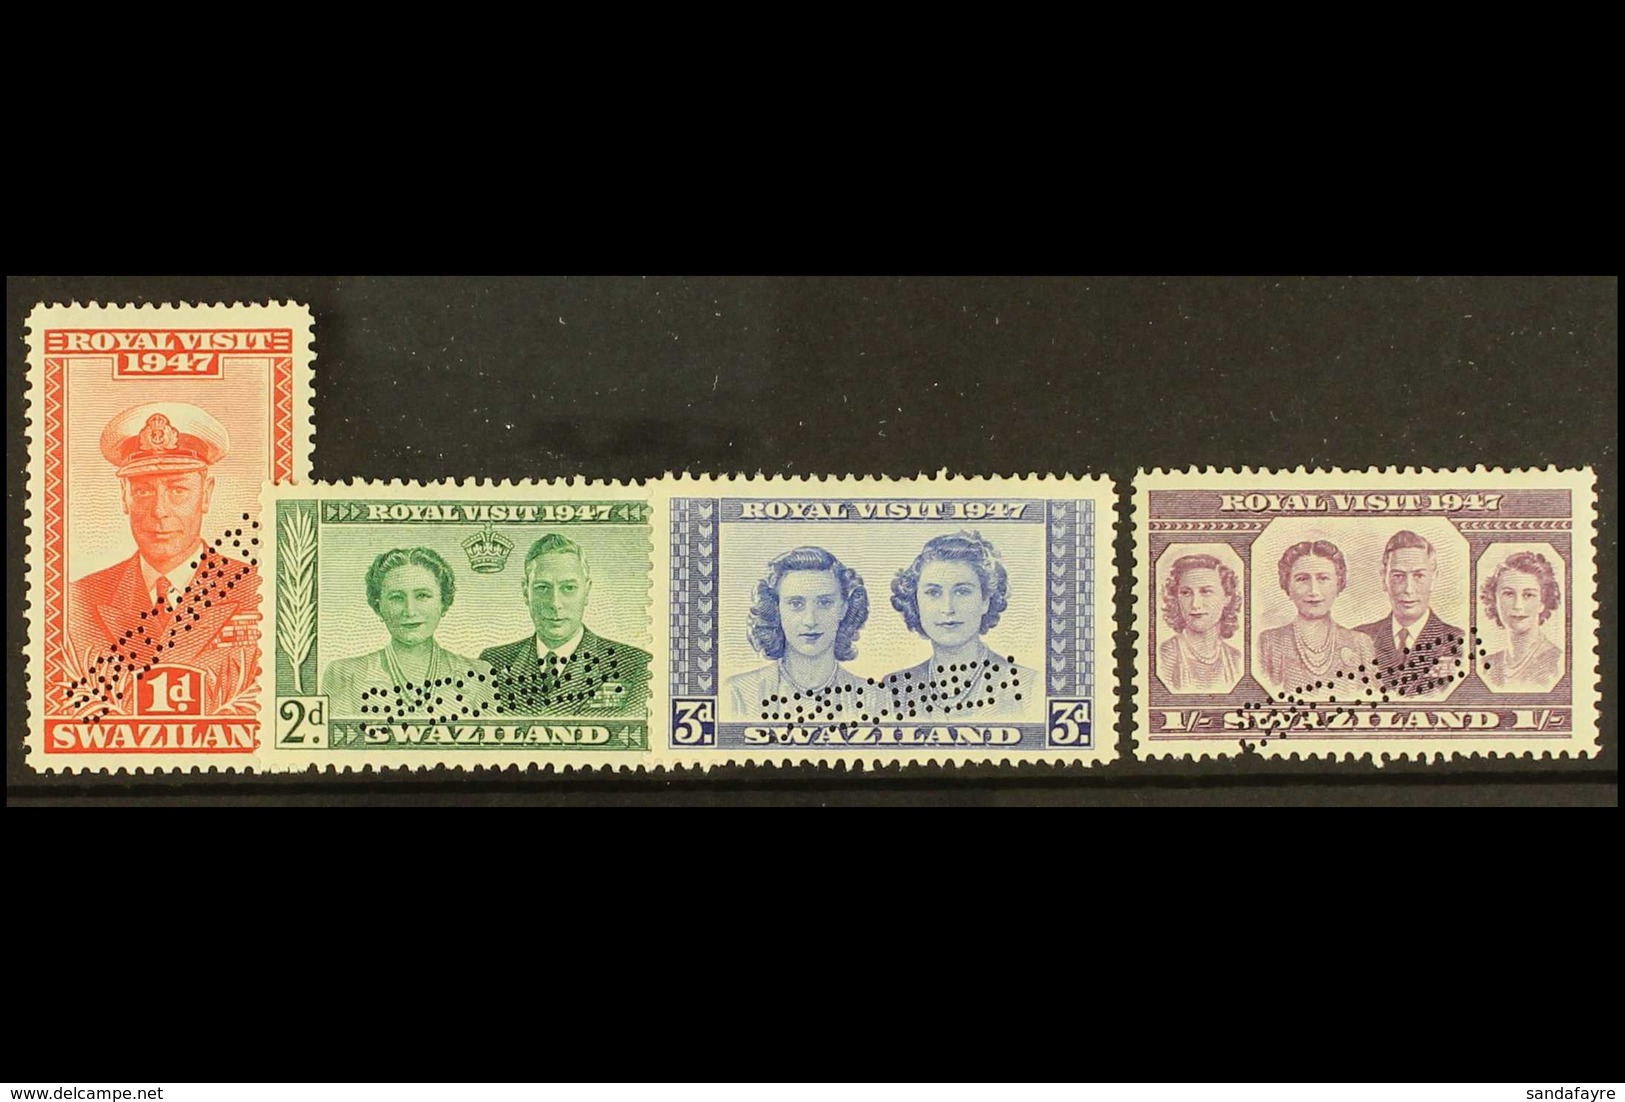 1947  Royal Visit Set Perforated "Specimen", SG 42s/45s, Very Fine Mint, Large Part Og. (4 Stamps) For More Images, Plea - Swaziland (...-1967)